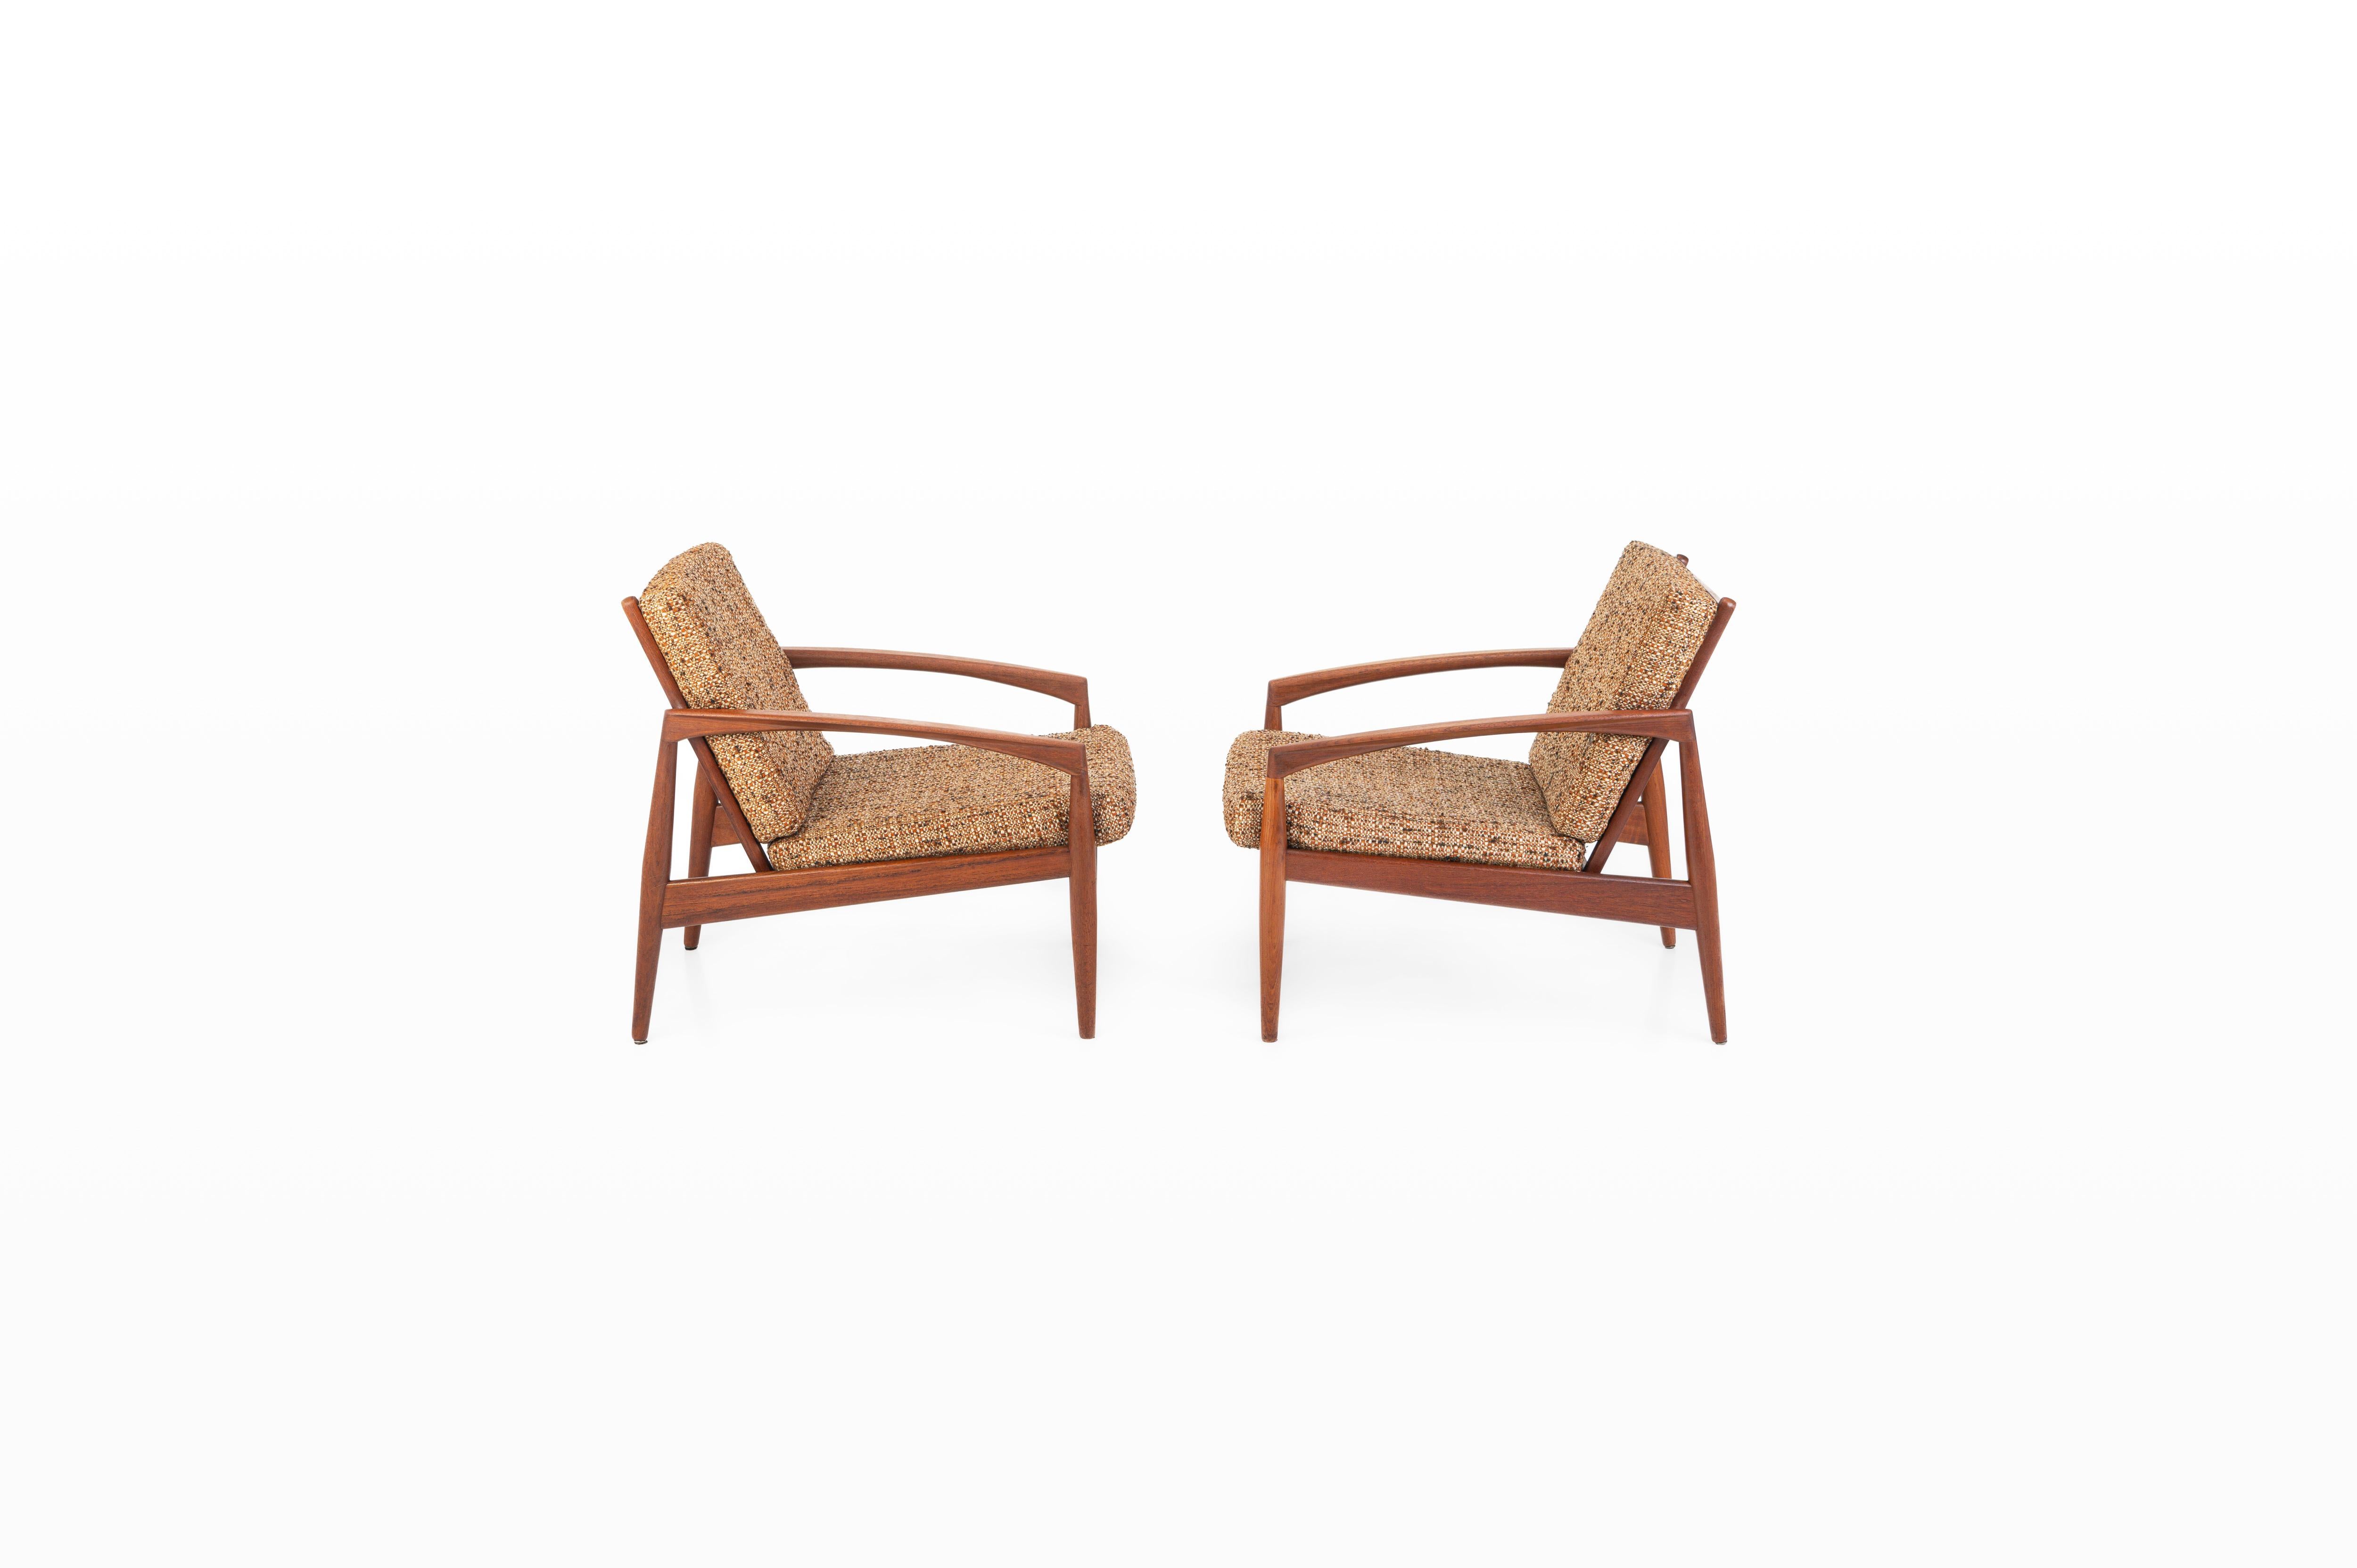 Ensemble de deux chaises vintage Paper Knife conçues par Kai Kristiansen pour Magnus Olesen au Danemark. Ces fauteuils sont conçus en 1955. Ils sont dotés d'un cadre en teck et d'un tissu mixte aux tons chauds de marron, de beige et